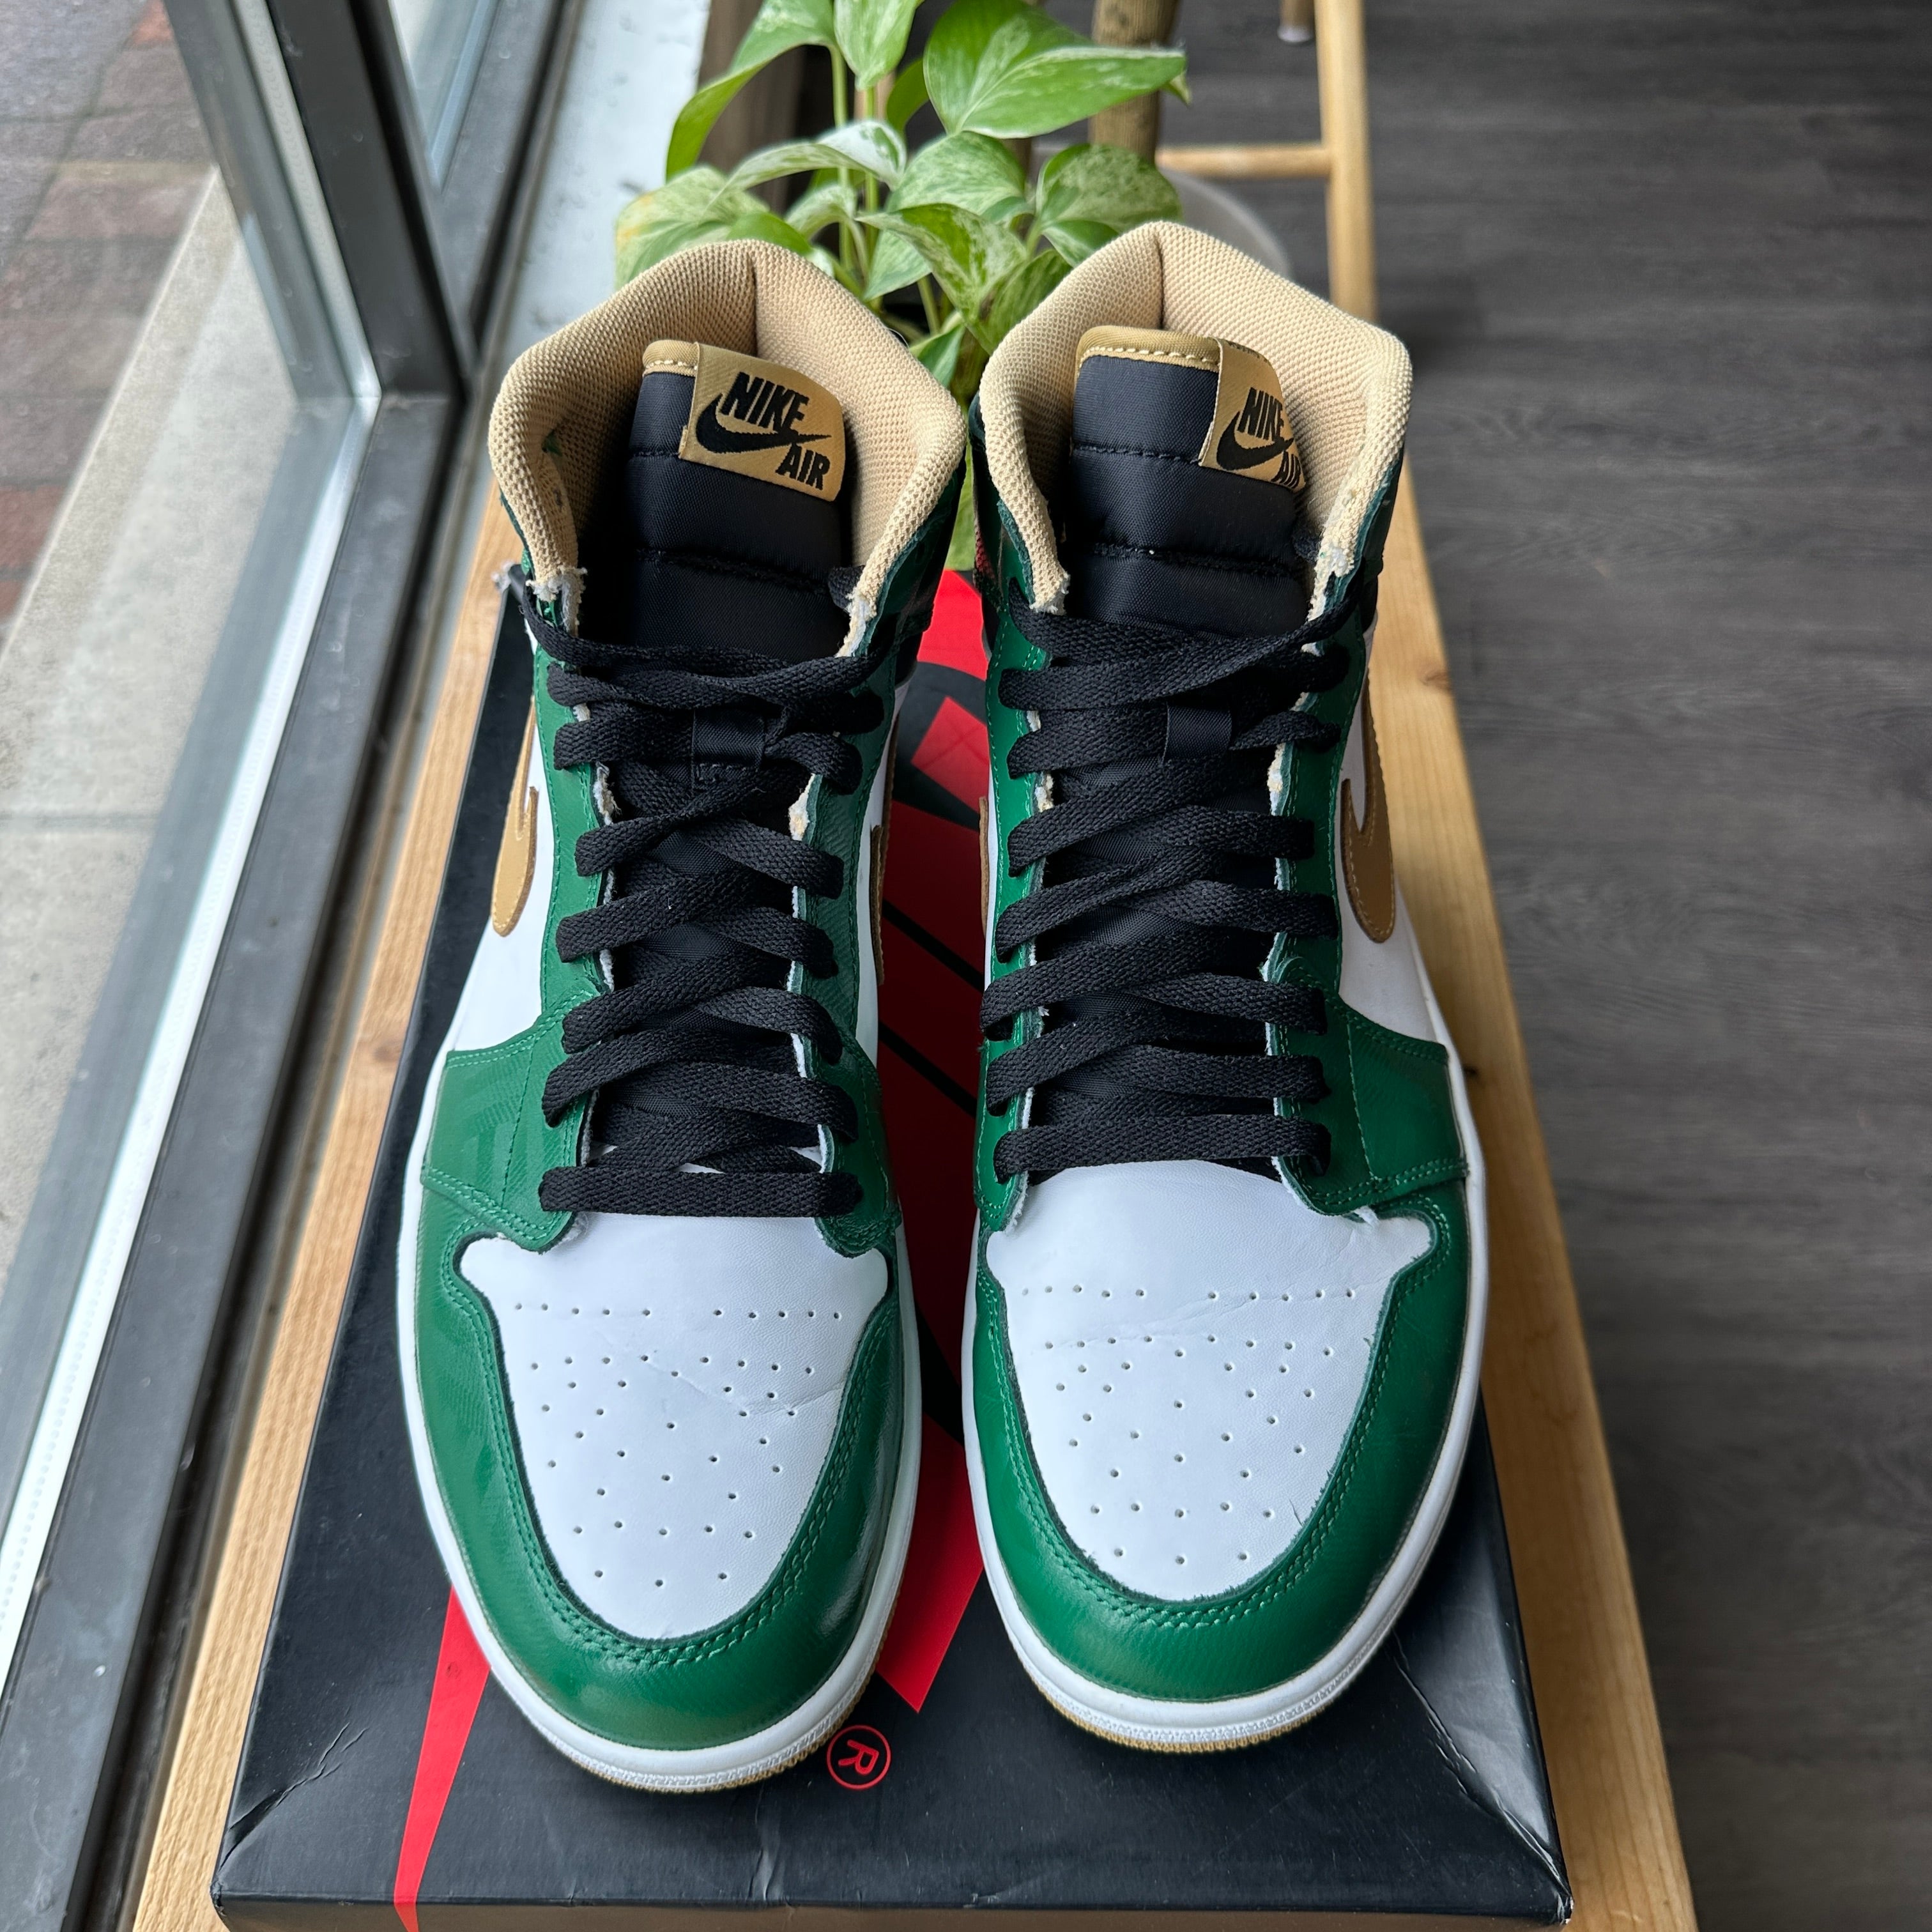 Air Jordan 1 "Celtics" (2013) Size 10